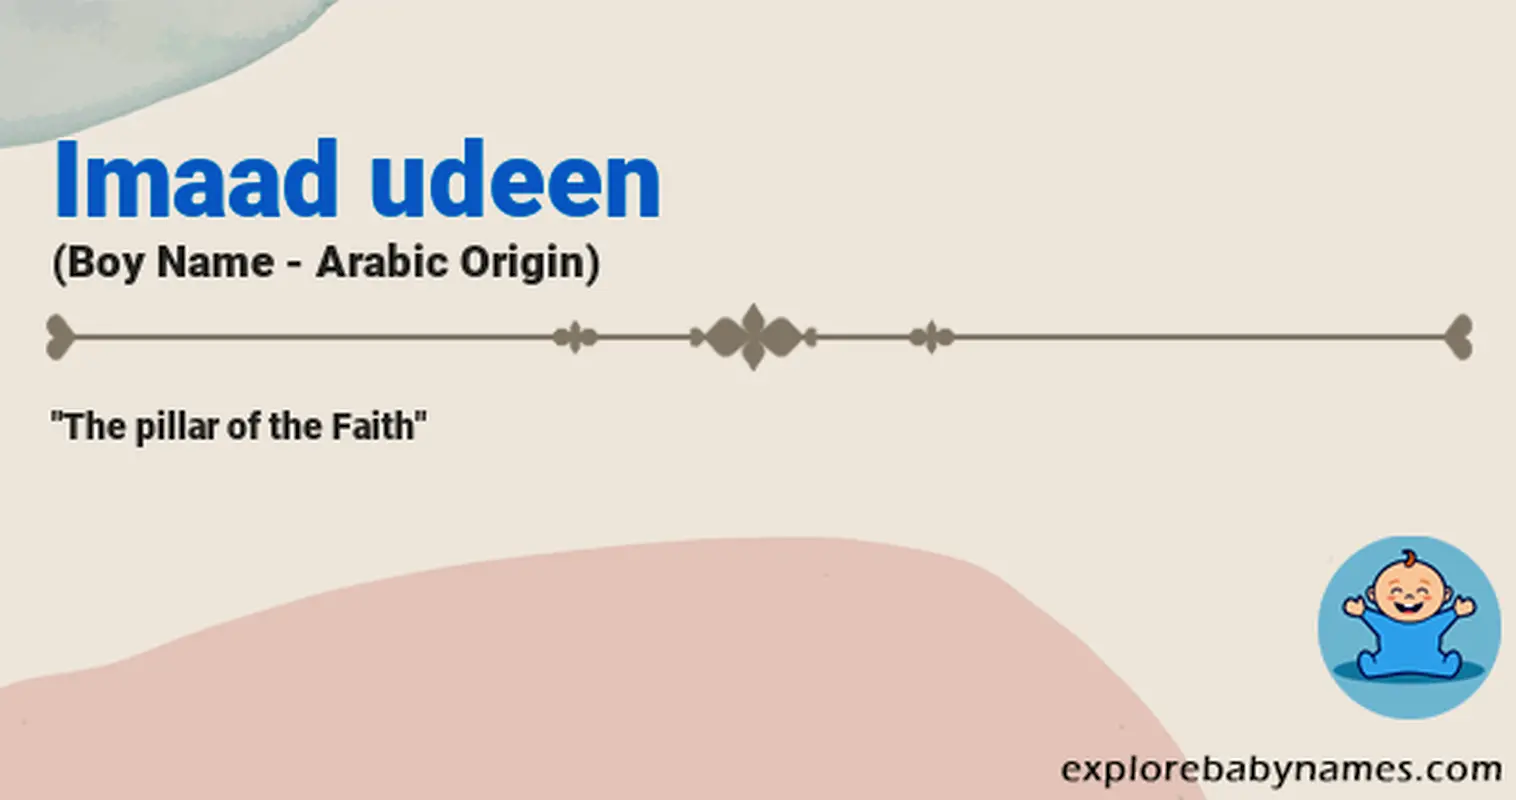 Meaning of Imaad udeen